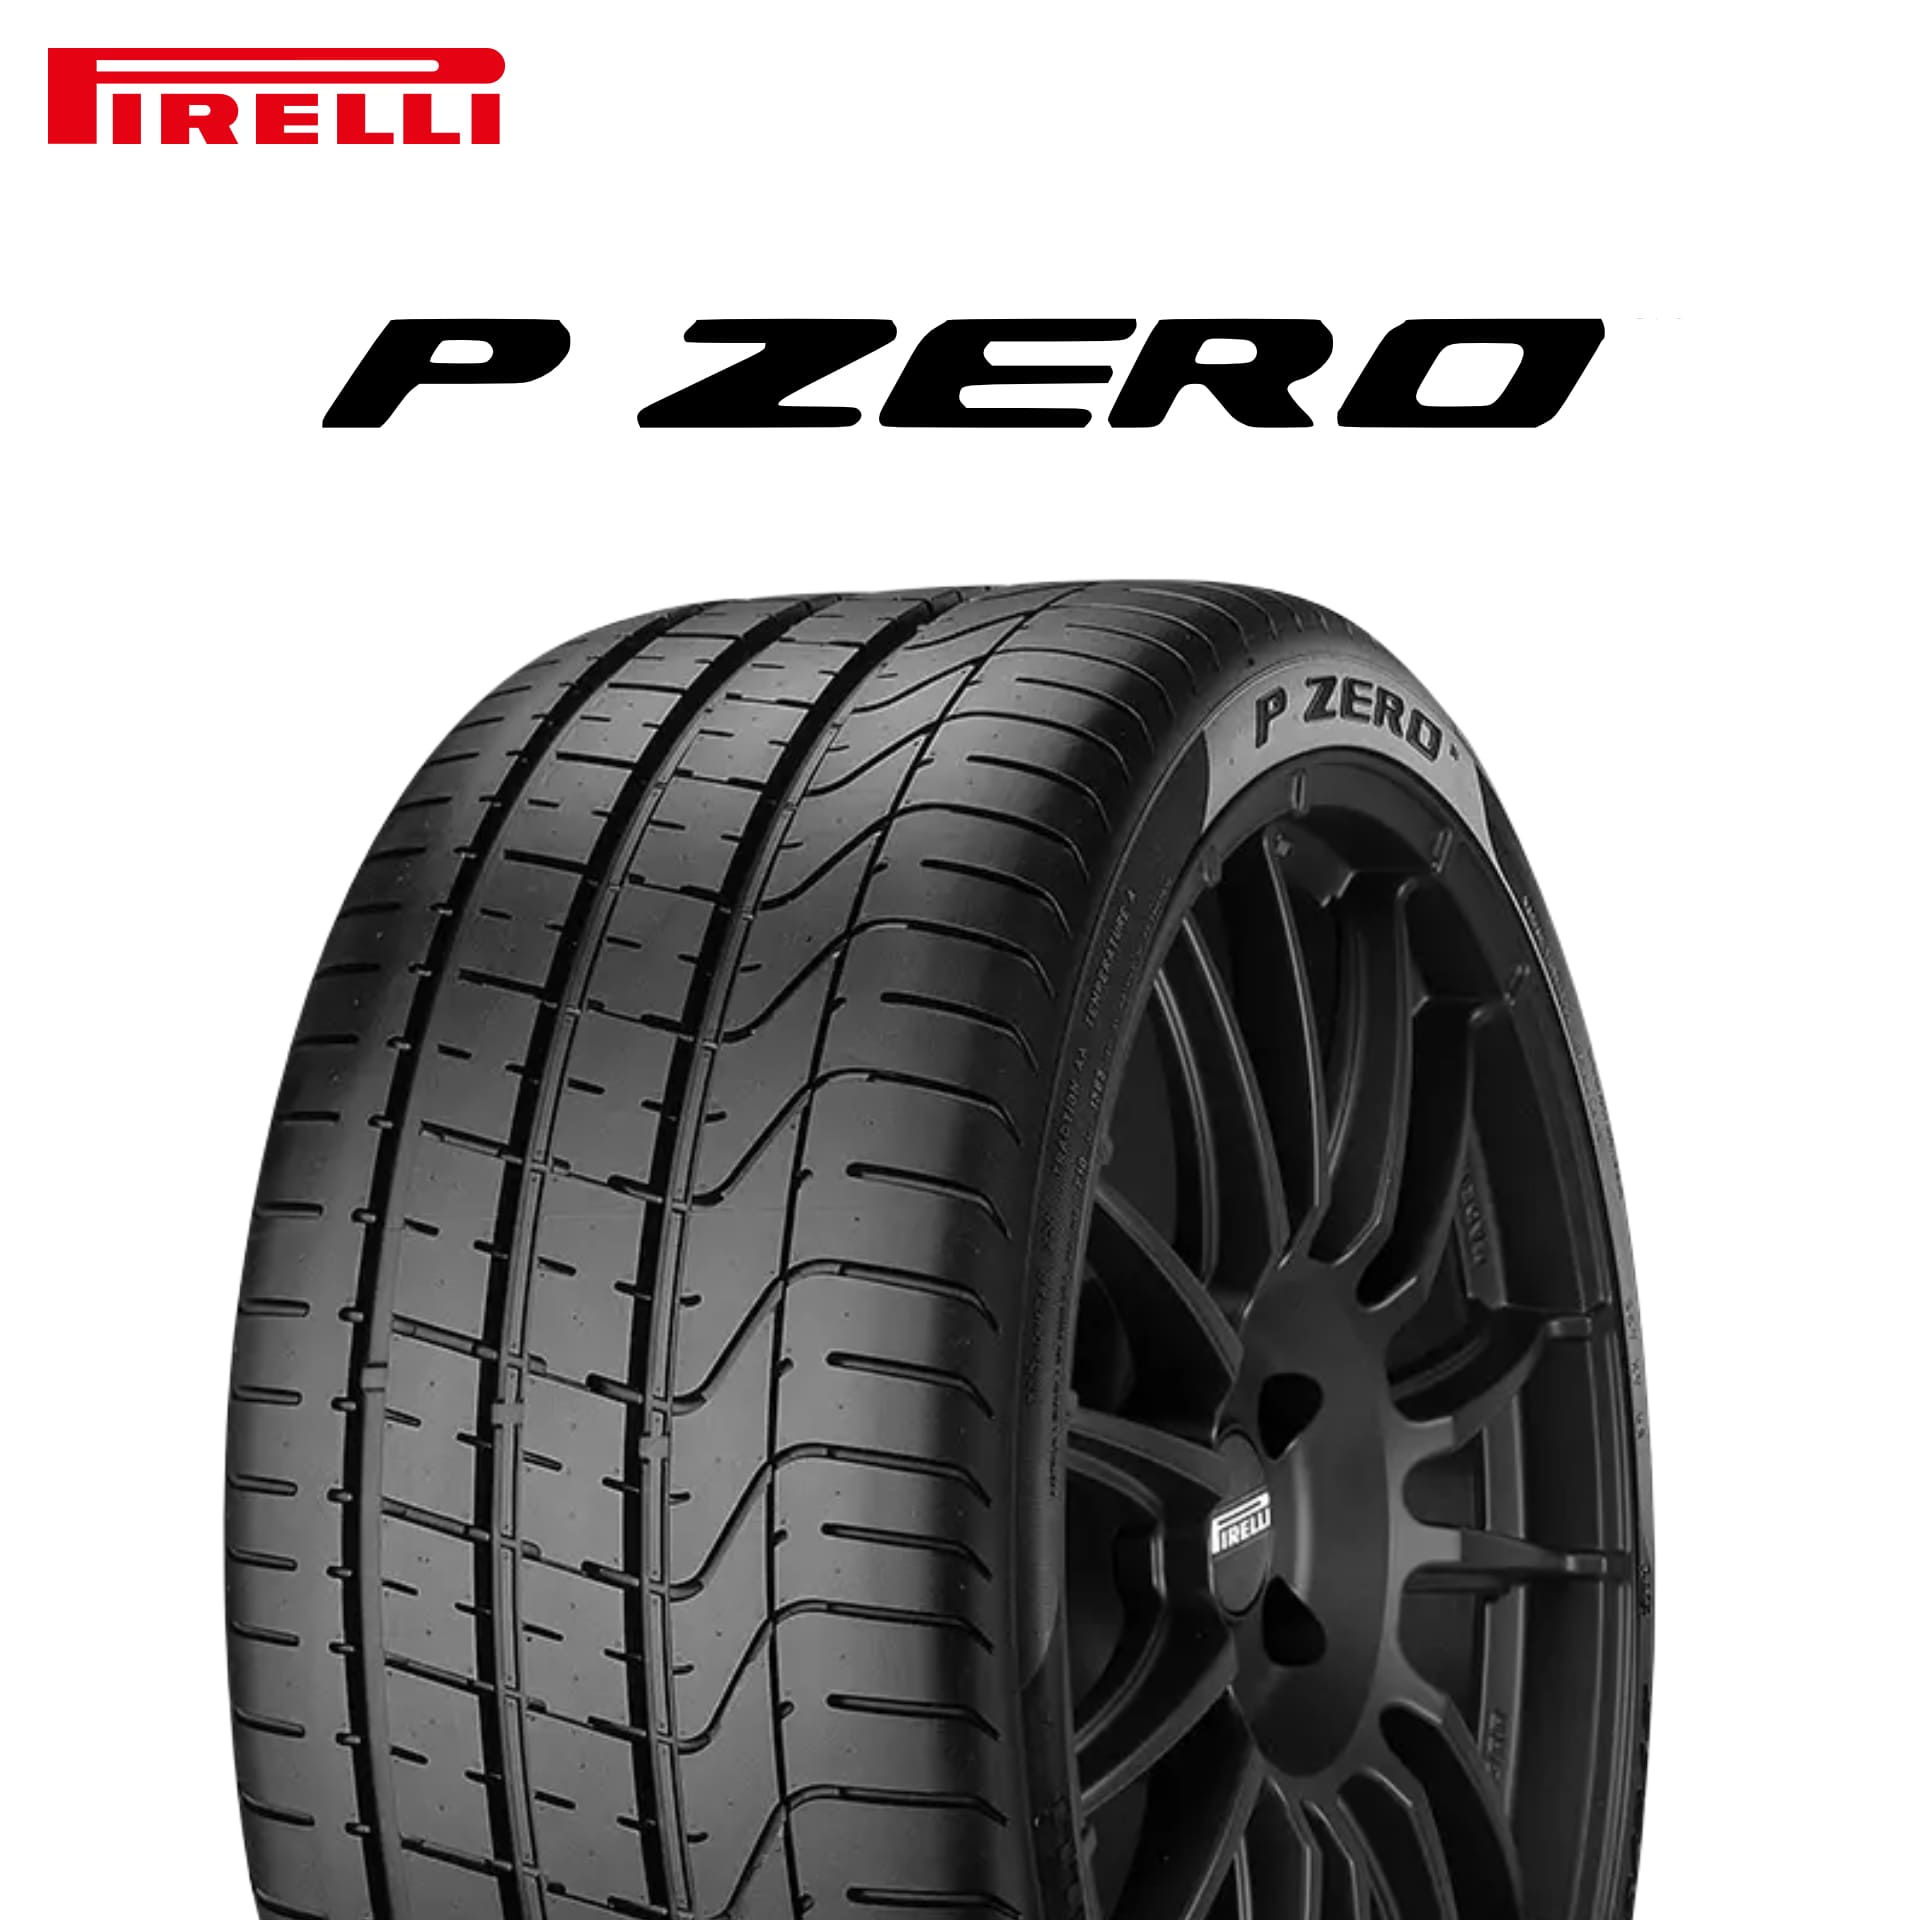 21年製 235/50R18 (101Y) XL MGT ピレリ P ZERO (ピーゼロ) マセラティ承認タイヤ 18インチ 新品